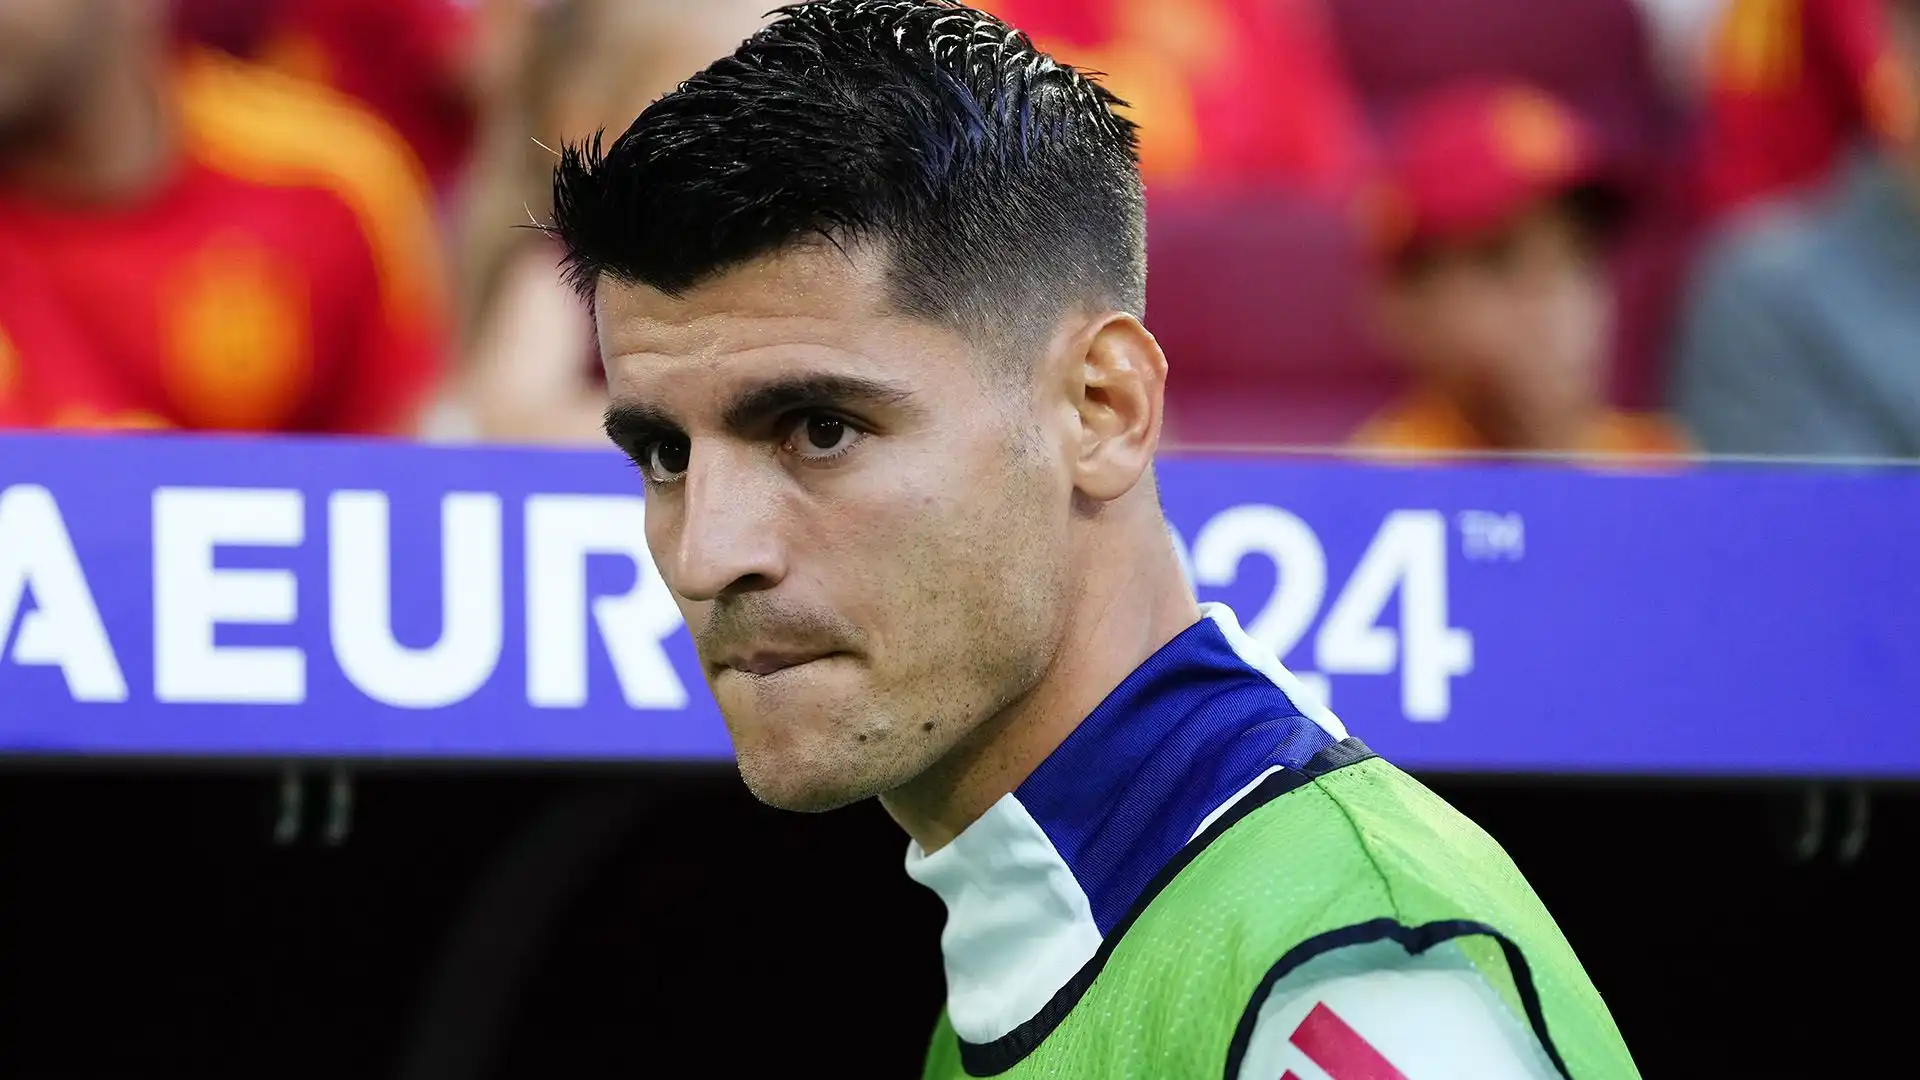 L'attaccante iberico era già stato contattato nella scorsa stagione da alcuni club dell'Arabia Saudita